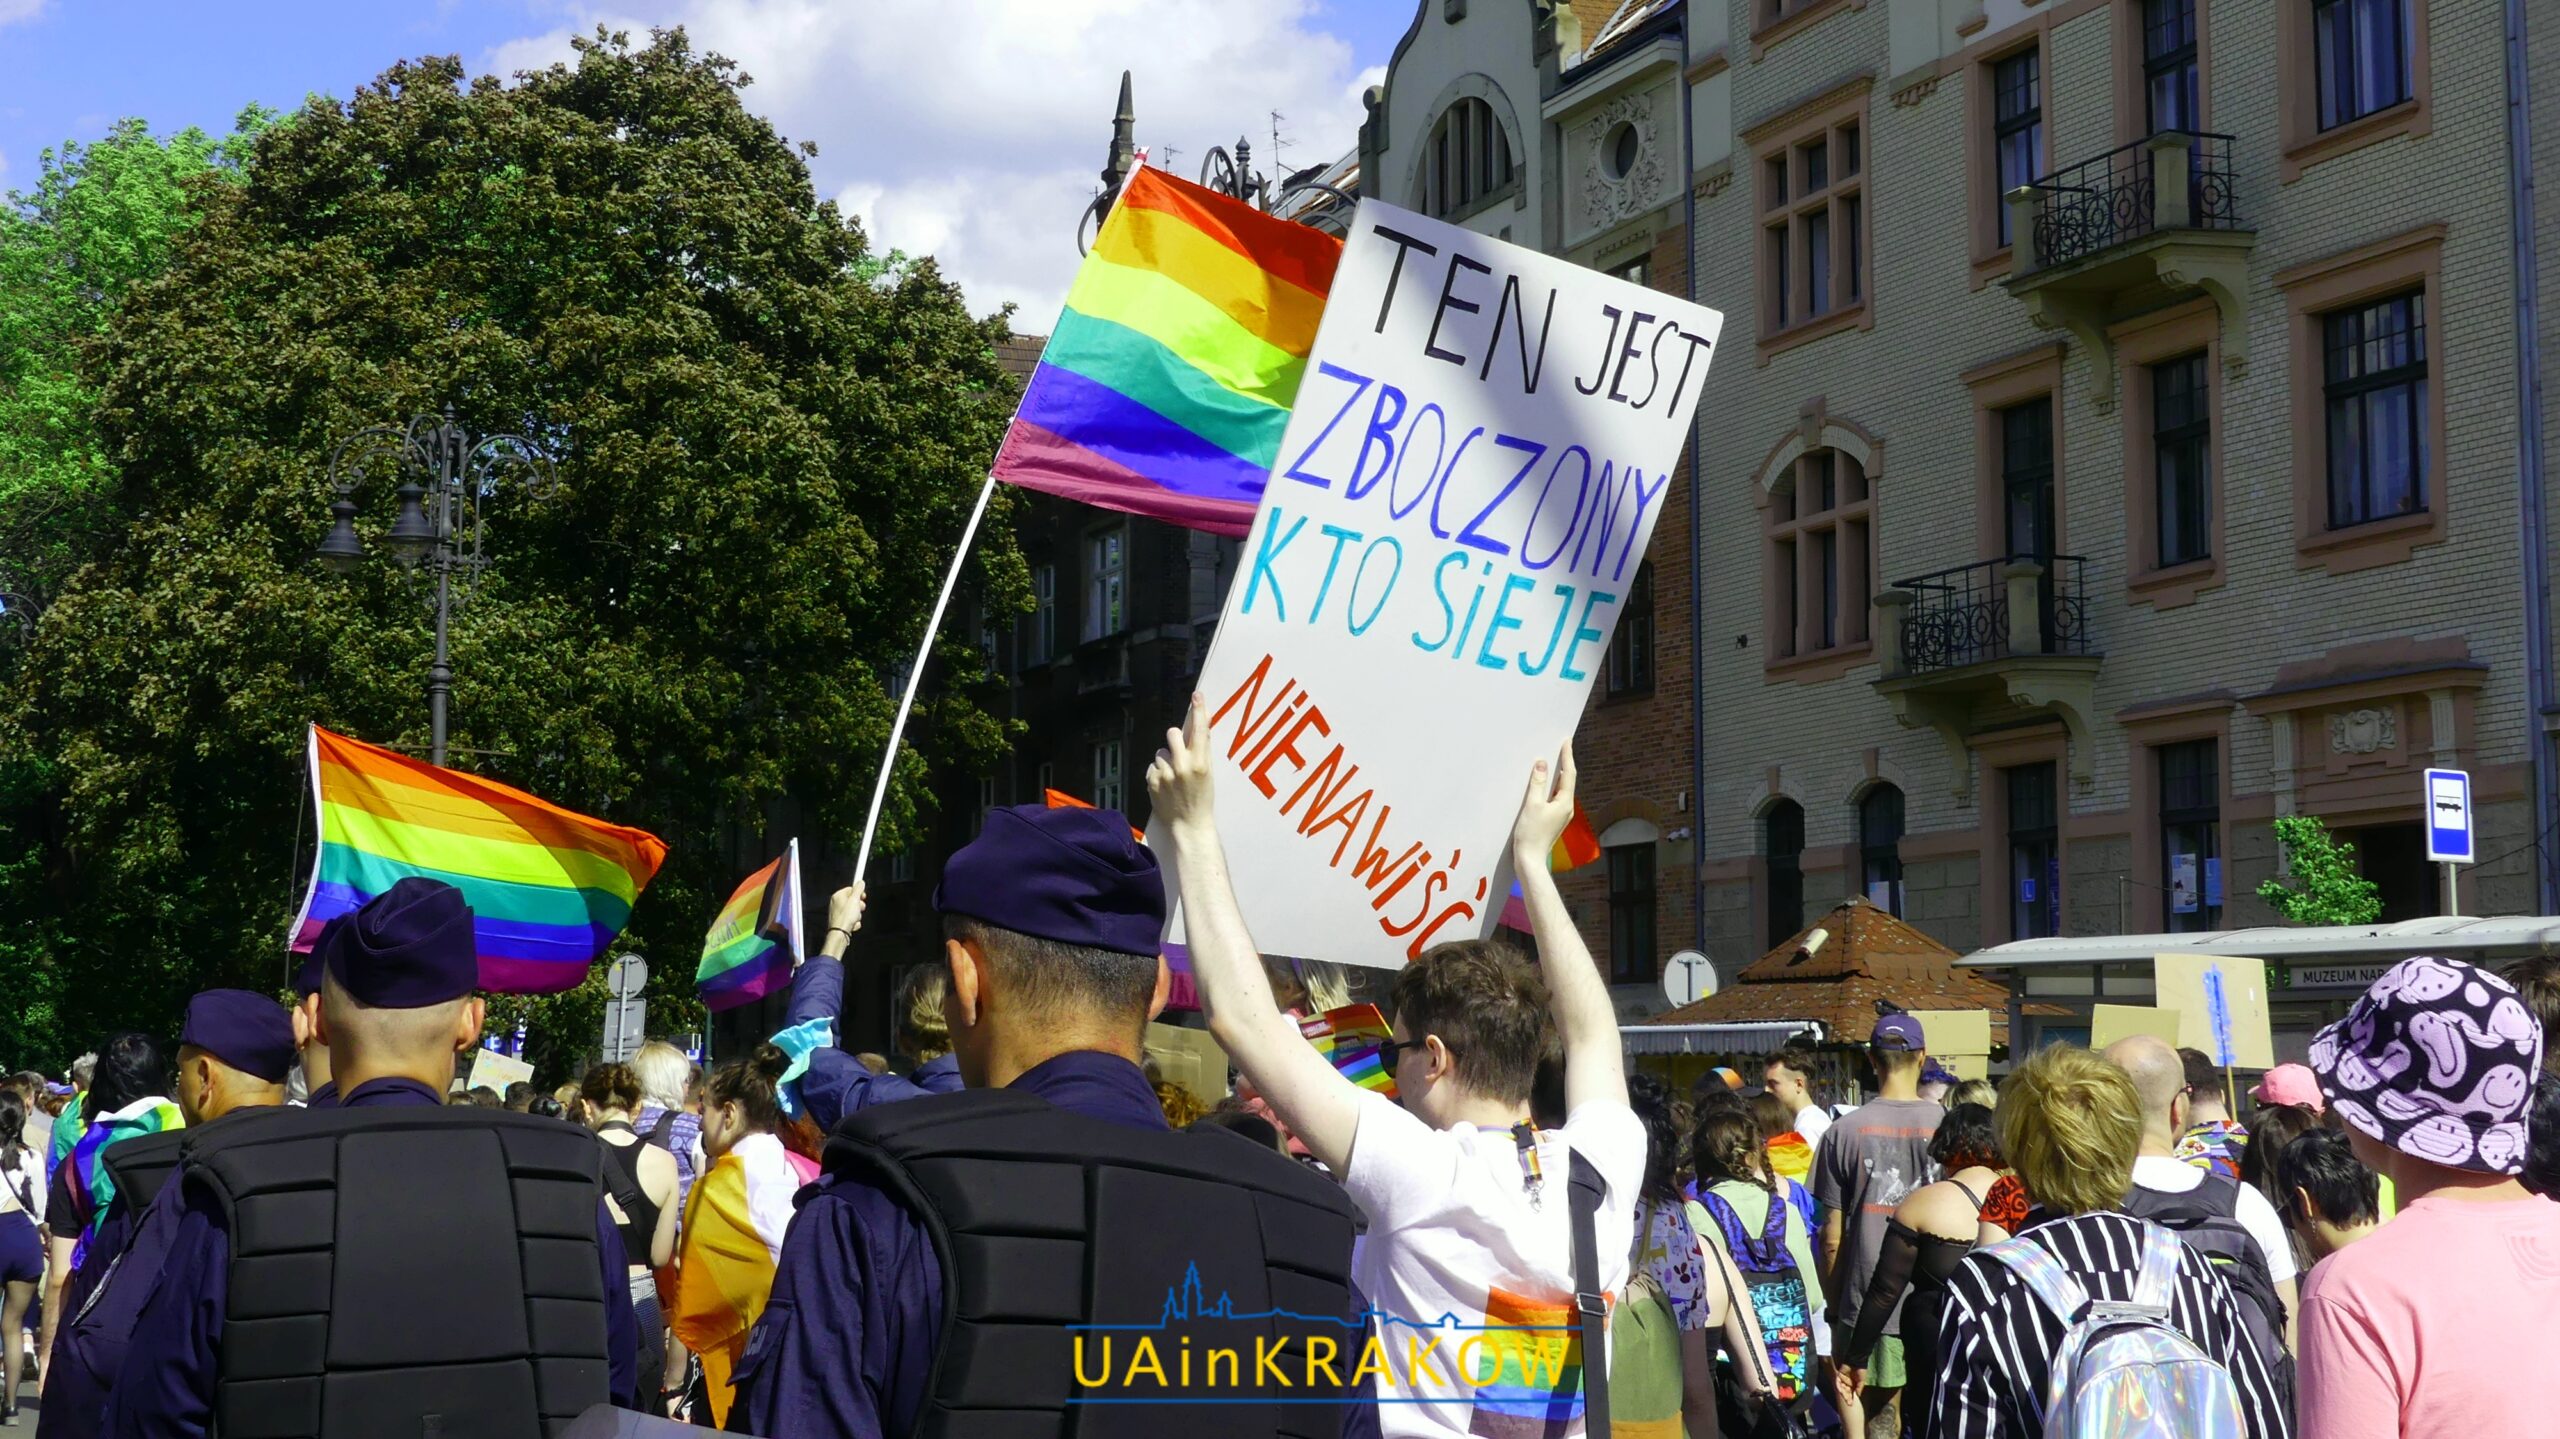 Кохання, рівність, толерантність: як пройшов Марш рівності в Кракові [ФОТО] 9 scaled